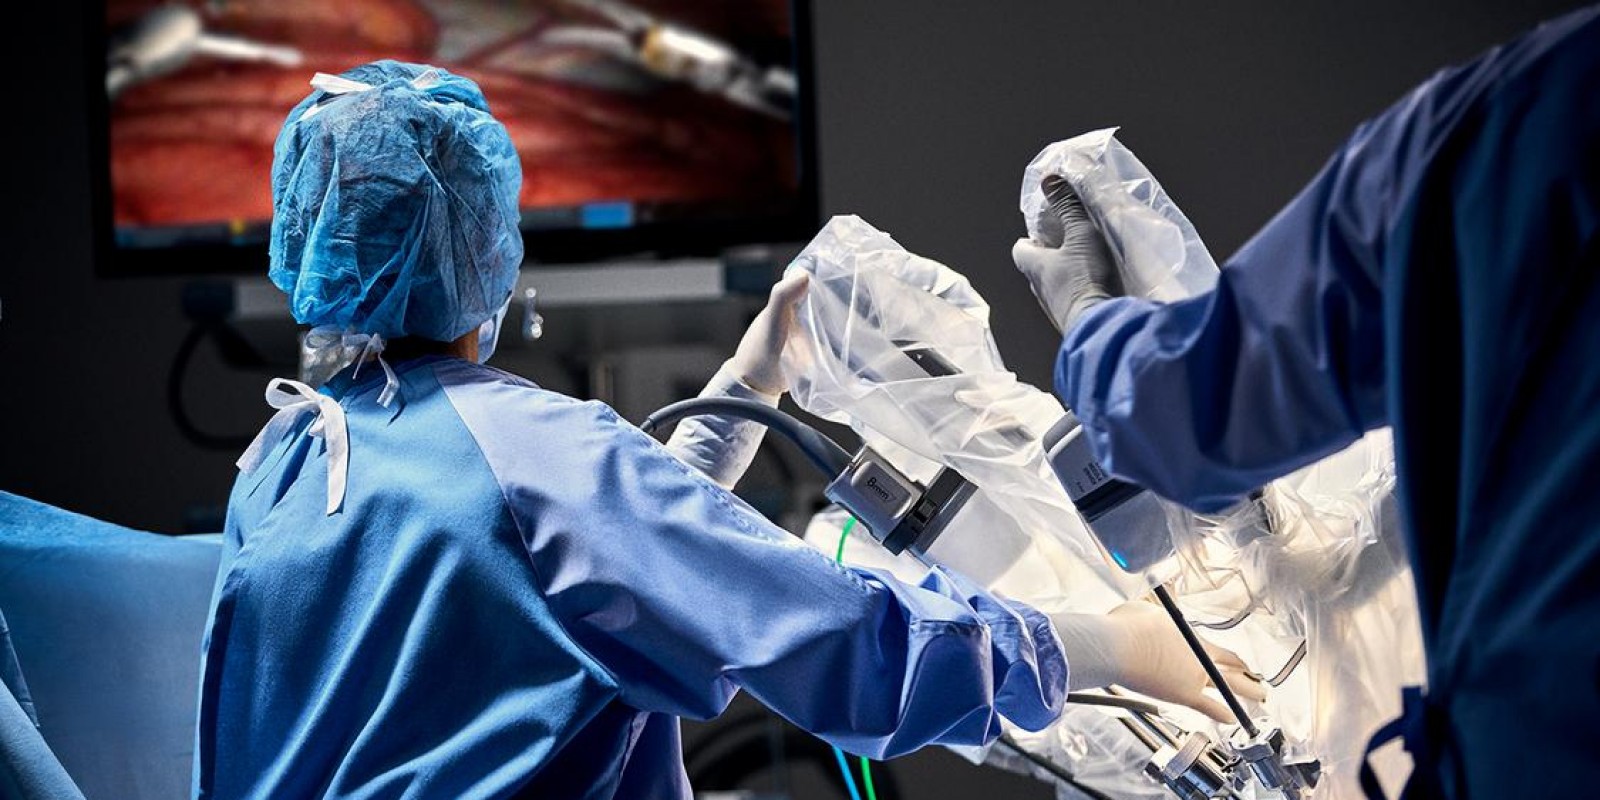 Descubra como a cirurgia robótica está revolucionando a medicina